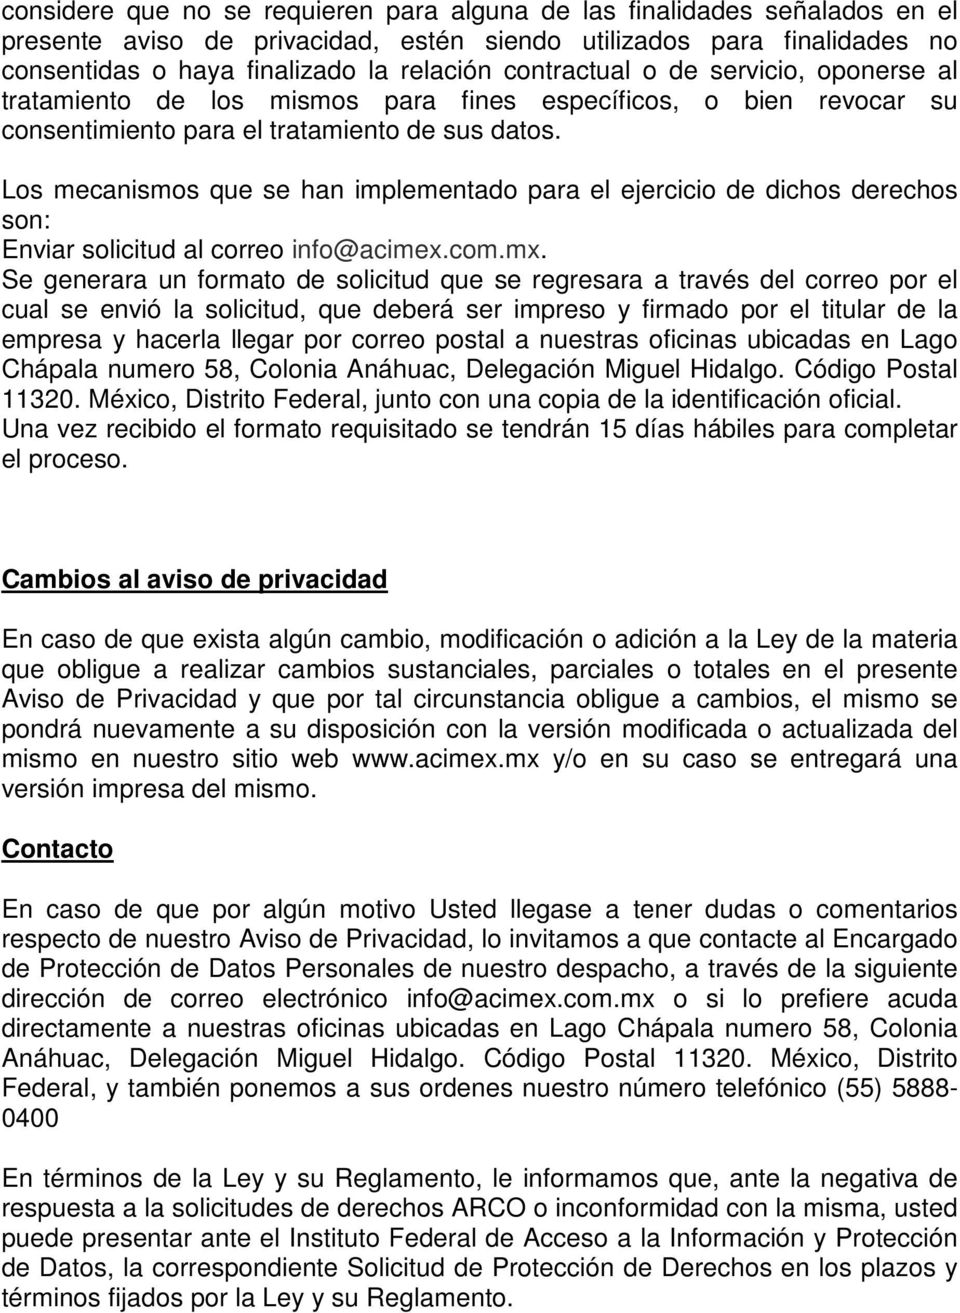 Los mecanismos que se han implementado para el ejercicio de dichos derechos son: Enviar solicitud al correo info@acimex.com.mx.